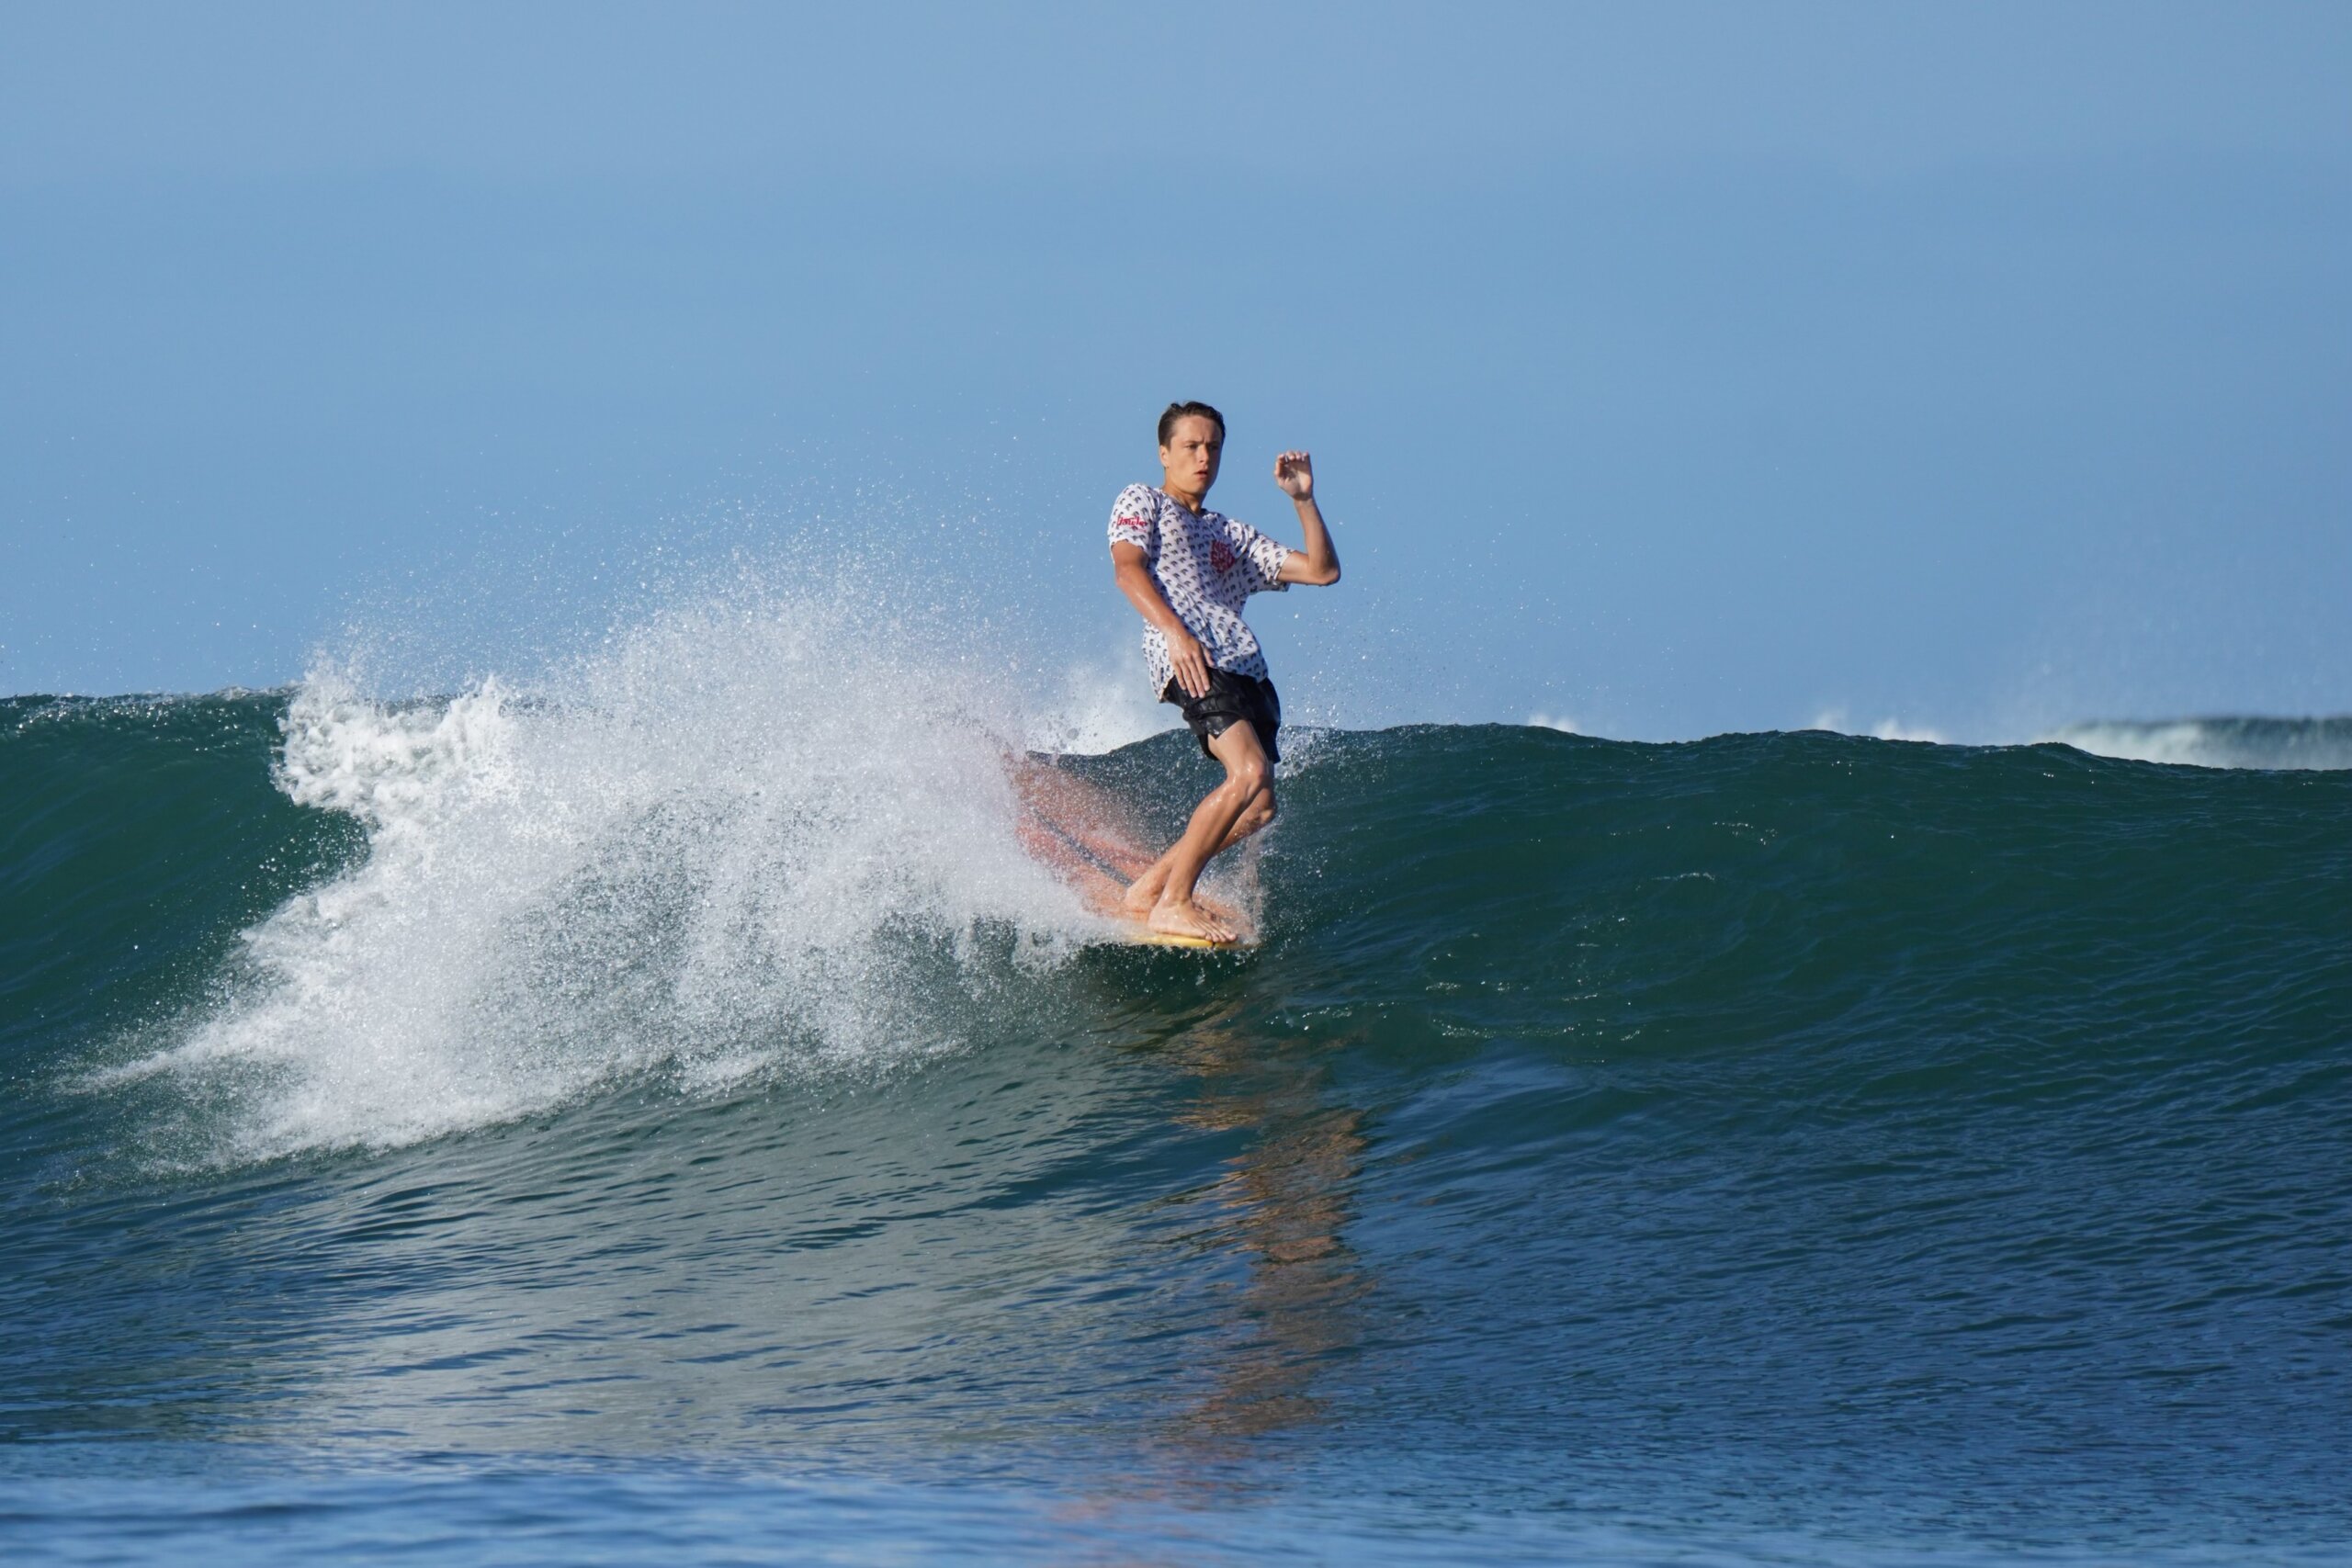 Montauk surfer Chase Leider